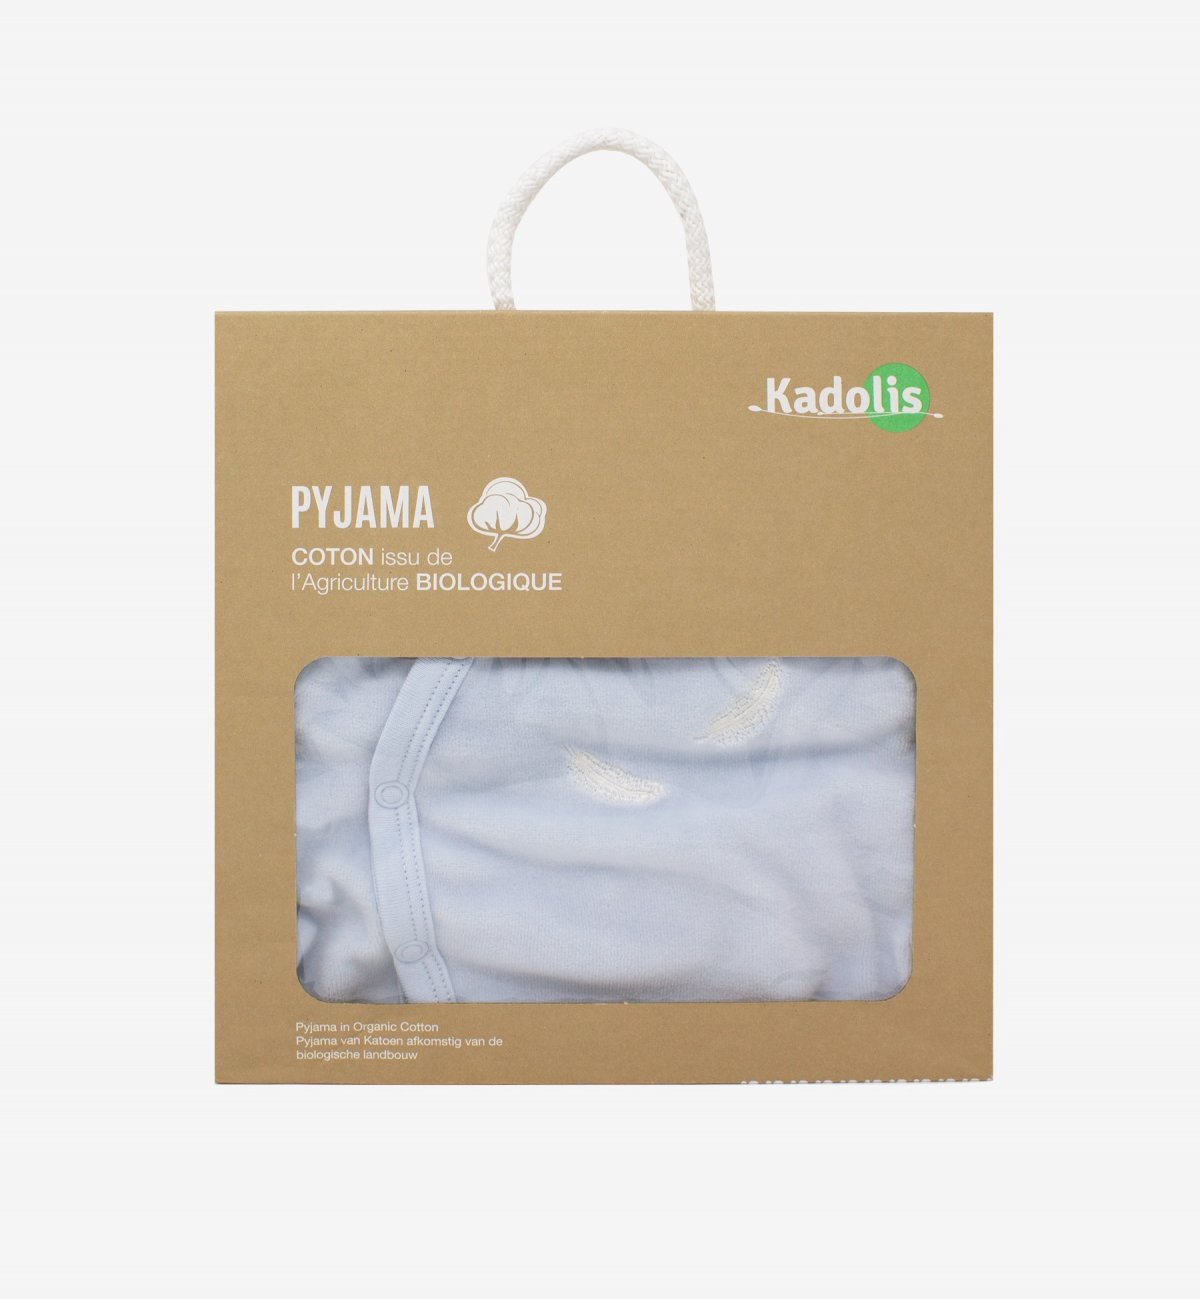 Pyjama bébé en Coton Bio avec motifs plumes blanches